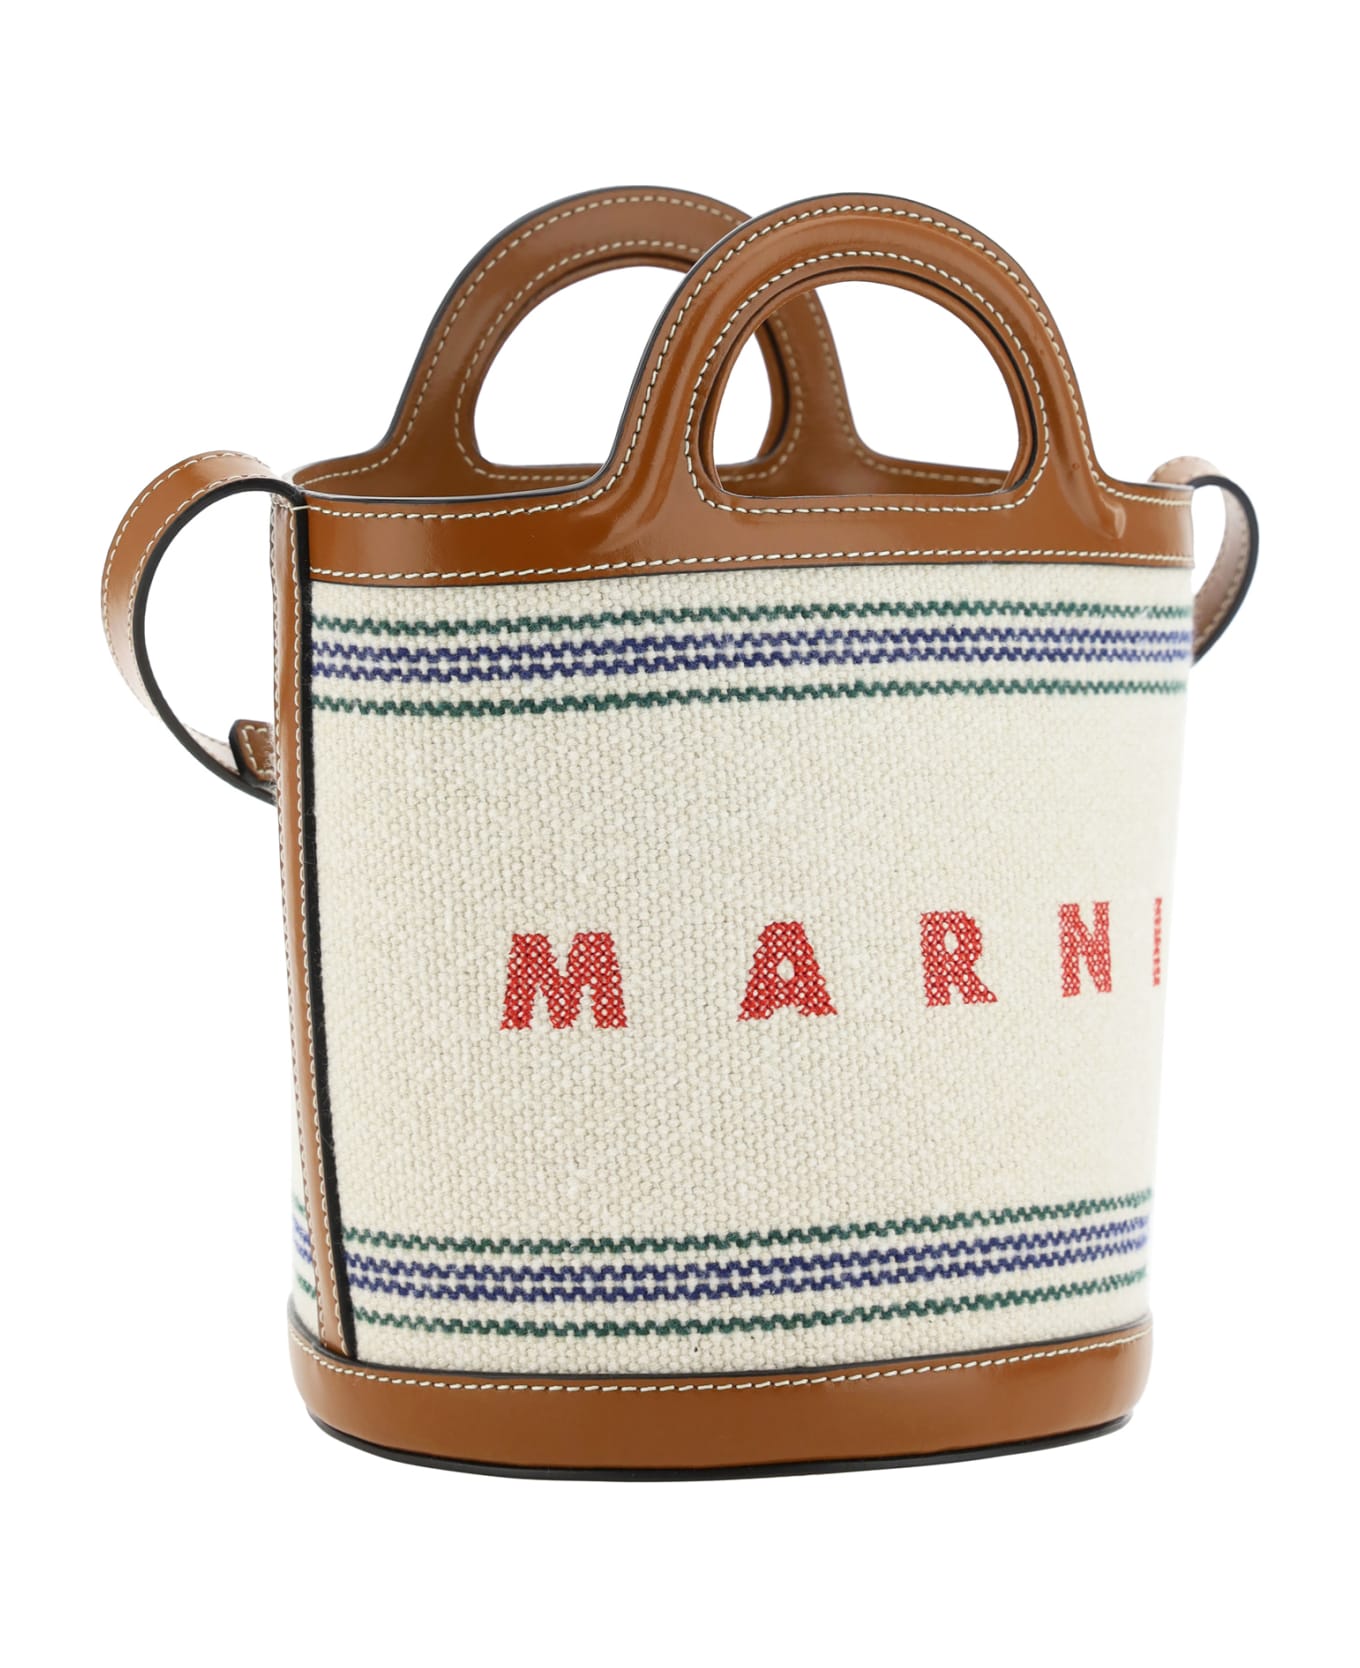 Marni Tropicalia Bucket Bag - Natural トートバッグ